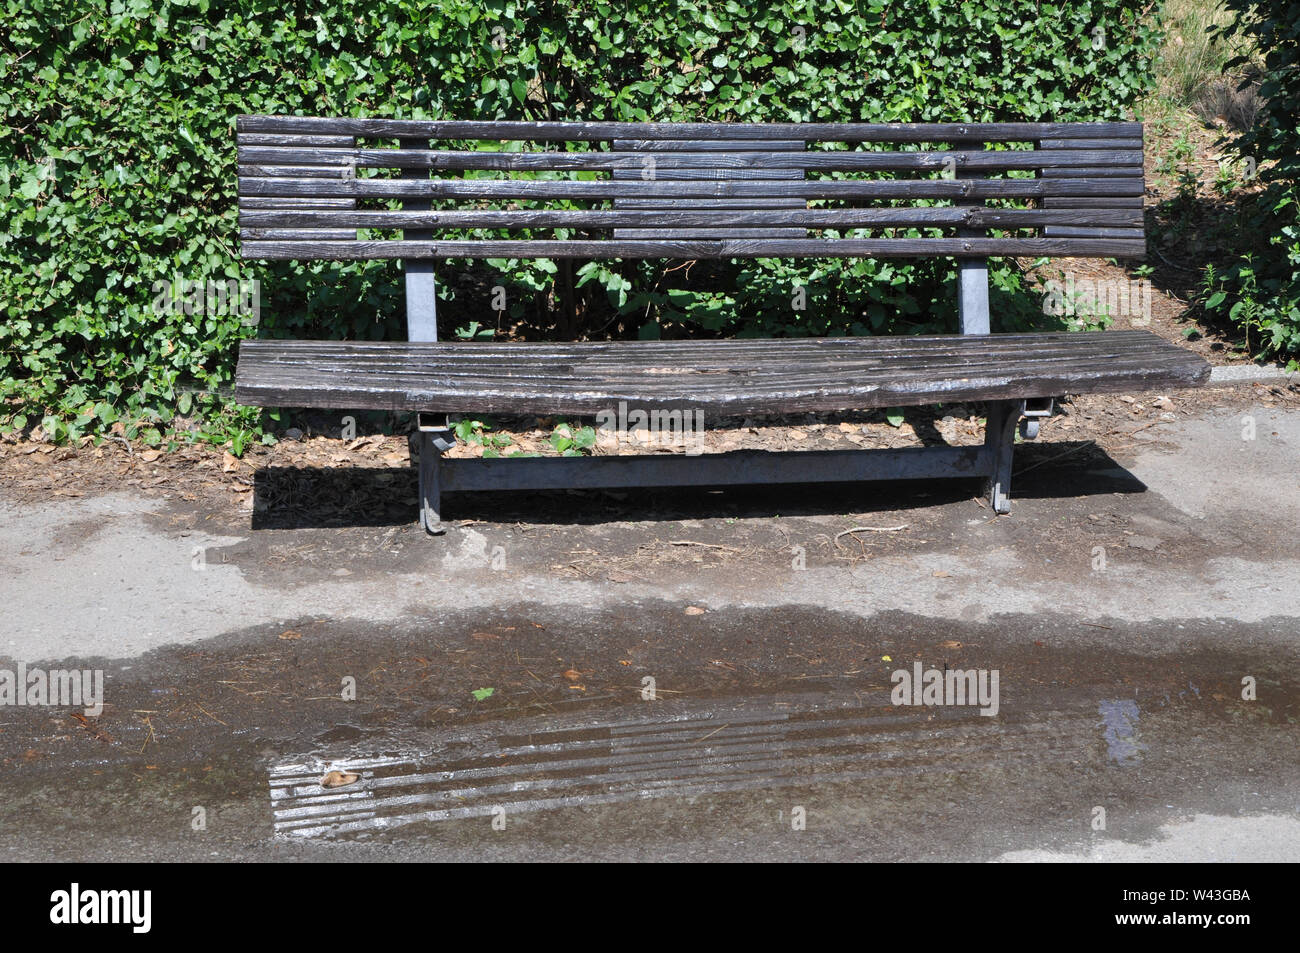 Schwarz lackiert alte Holzbank gegen grüne Sträucher mit dem Pool nach dem Sommer Regen in einem Park Stockfoto